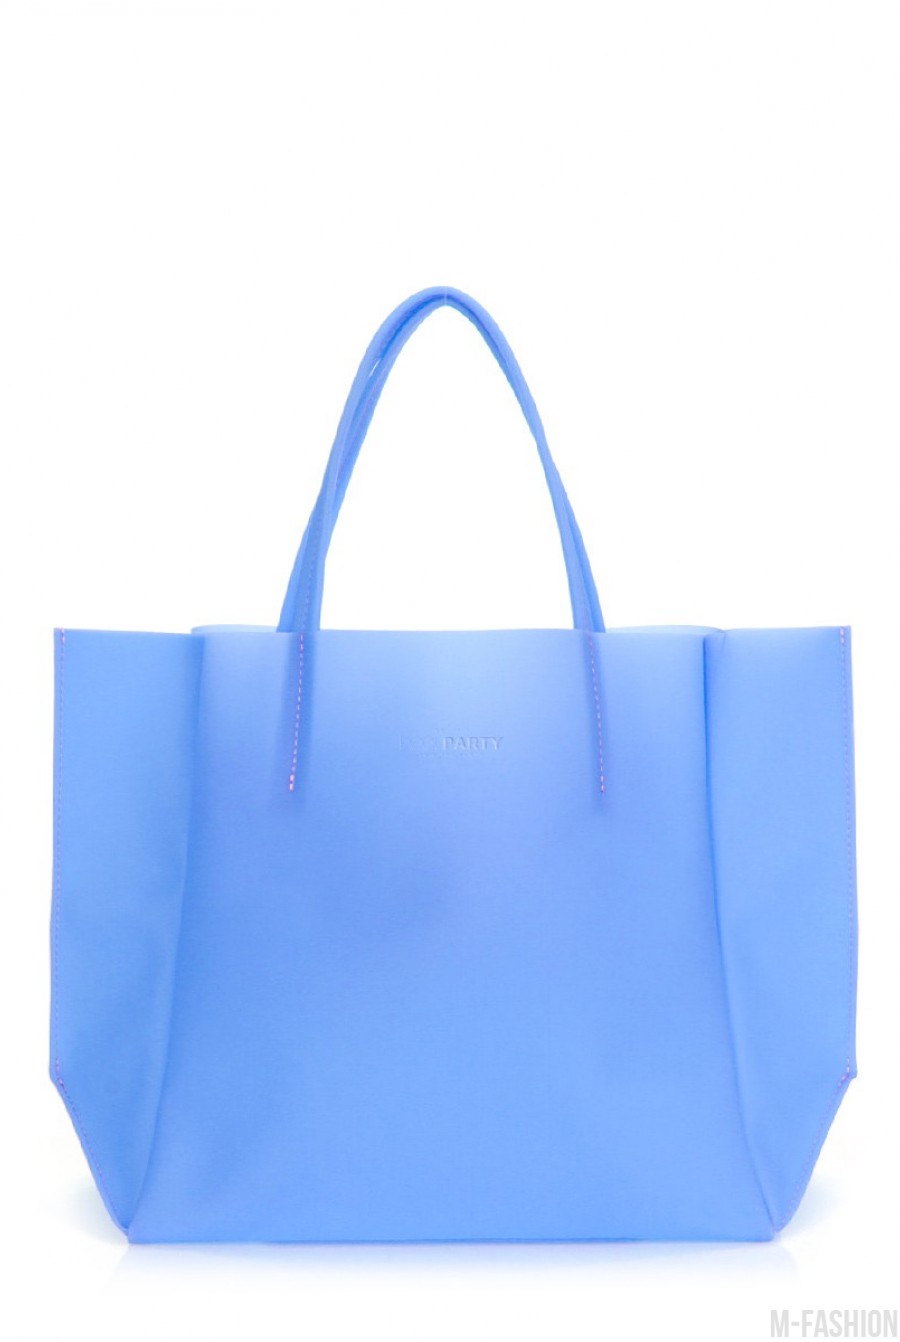 Пластиковая сумка-шоппинг Gossip голубая - Фото 1